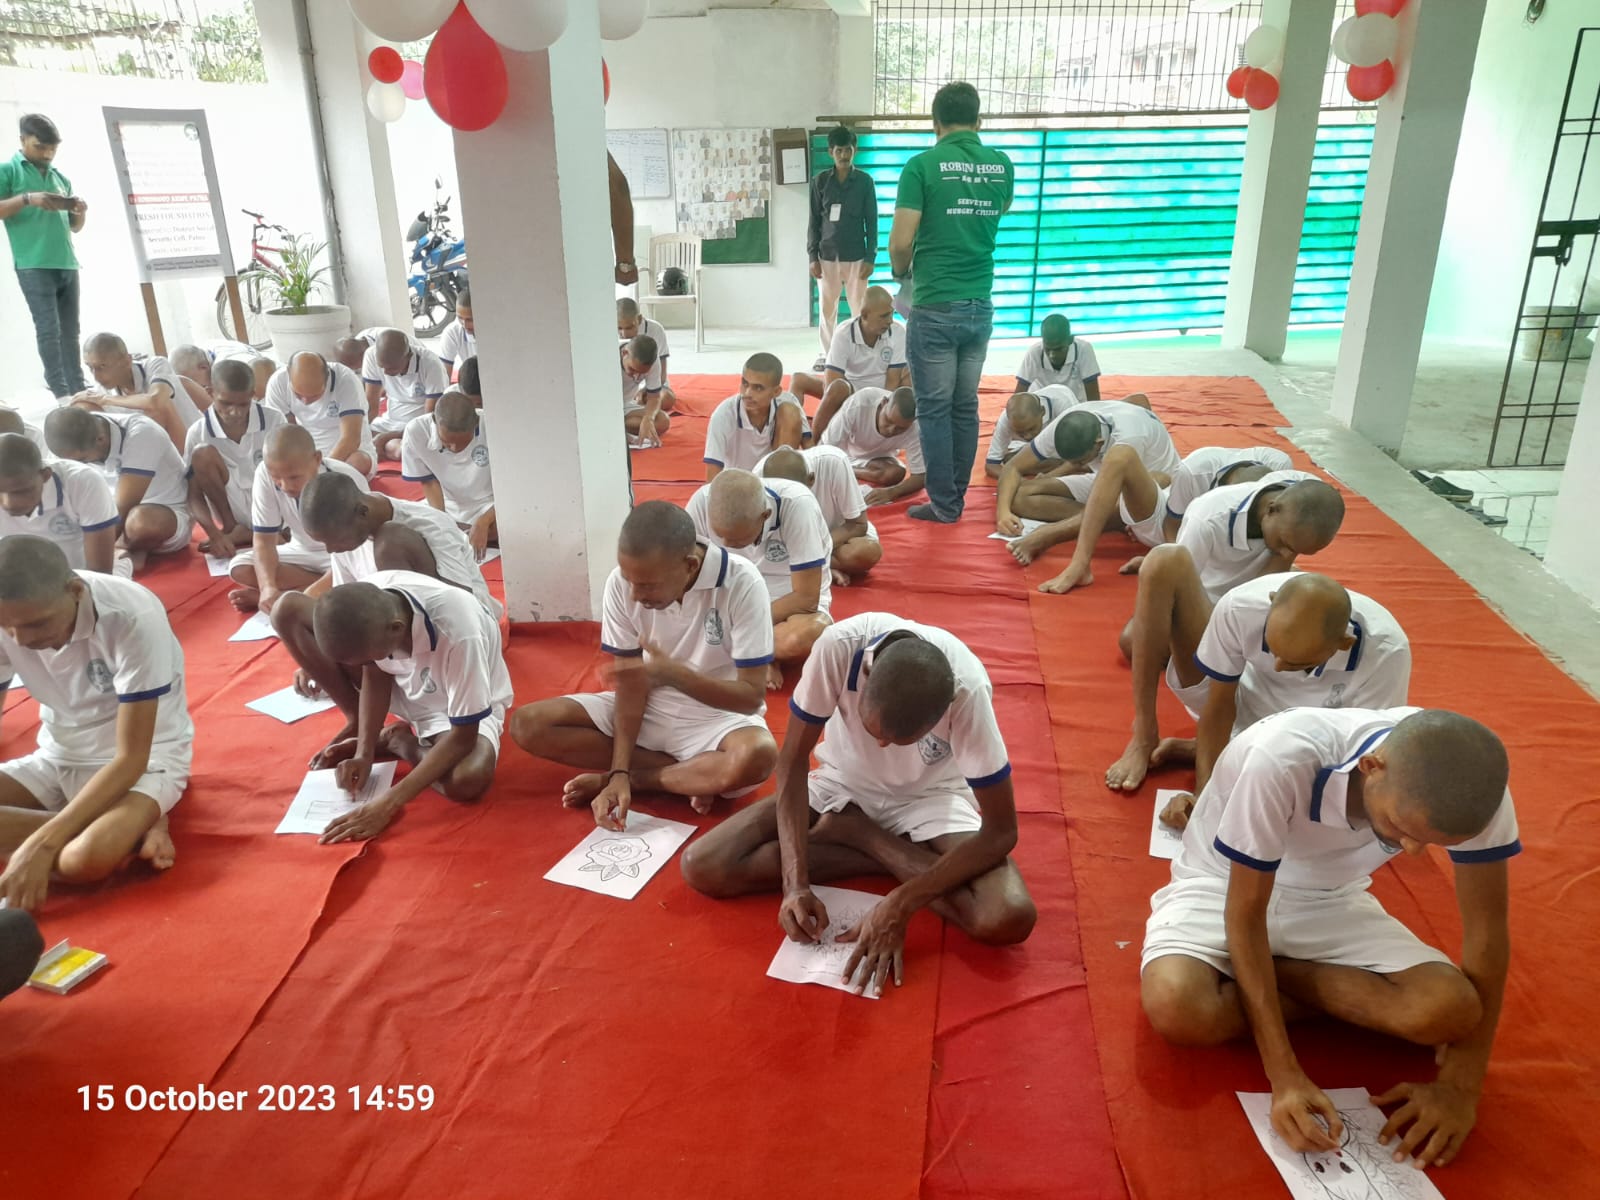 मानसिक समस्या से उभर रहे व्यक्तियों के लिए हाफ वे होम में कार्यक्रम आयोजित –दानापुर